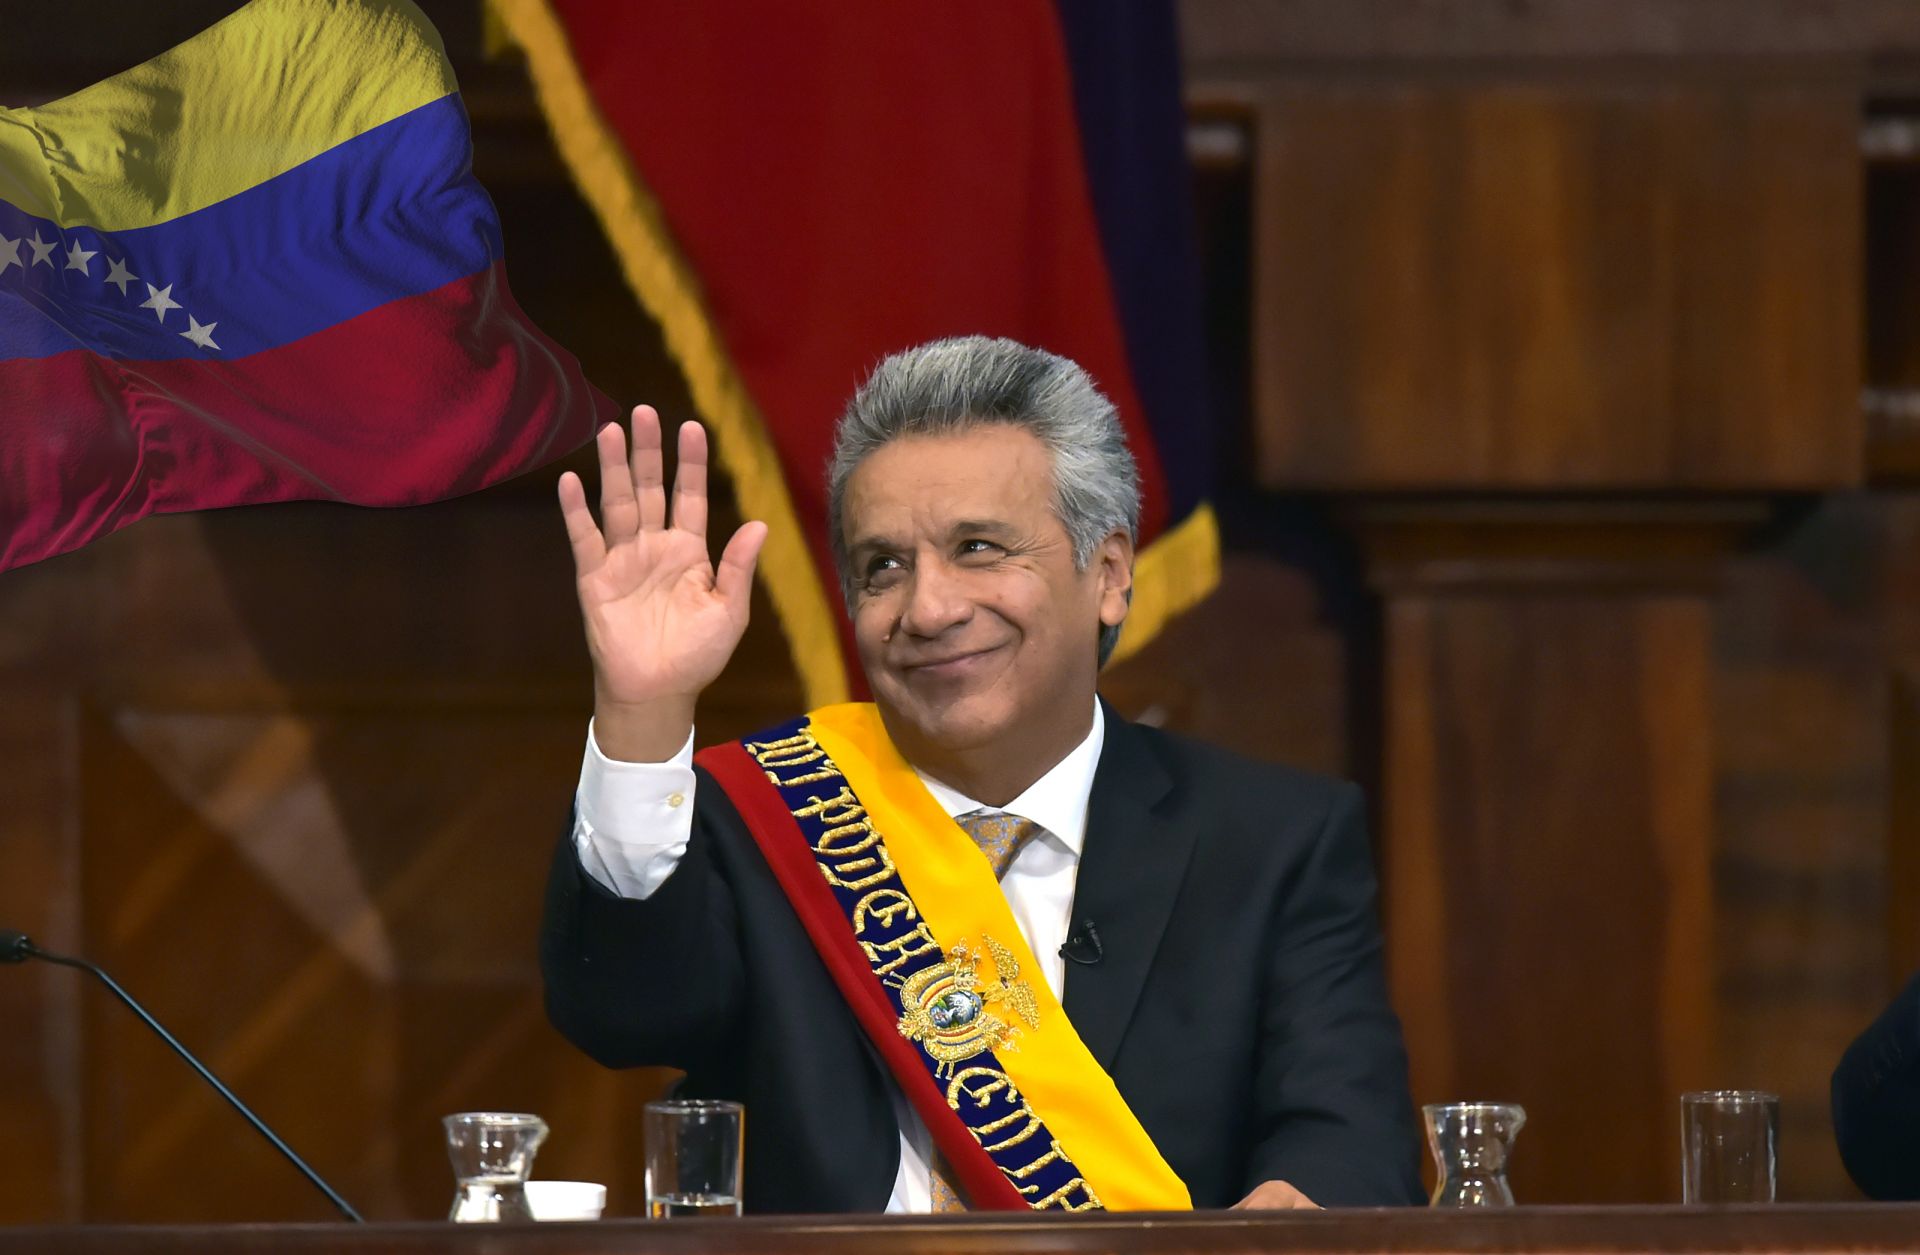 Ecuadorian President Lenin Moreno was vice president under Rafael Correa from 2007 to 2013.